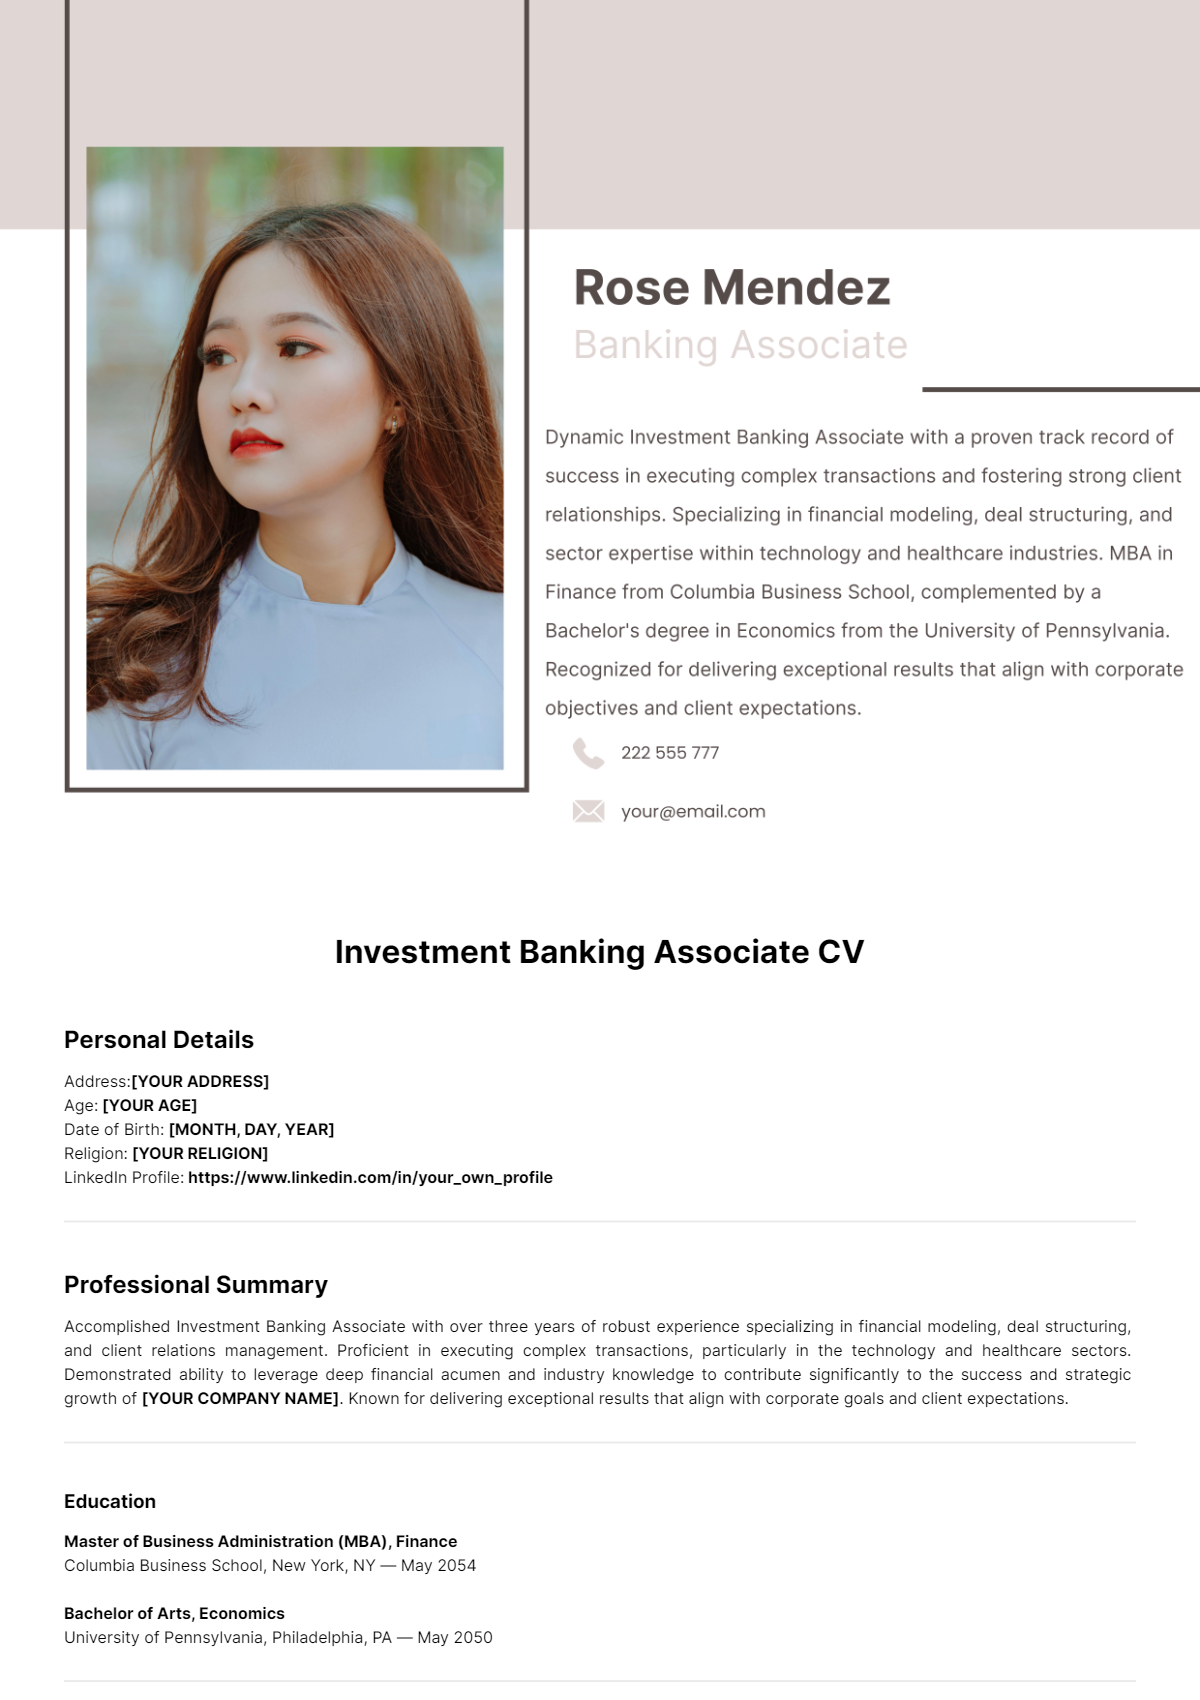 Investment Banking Associate CV Template